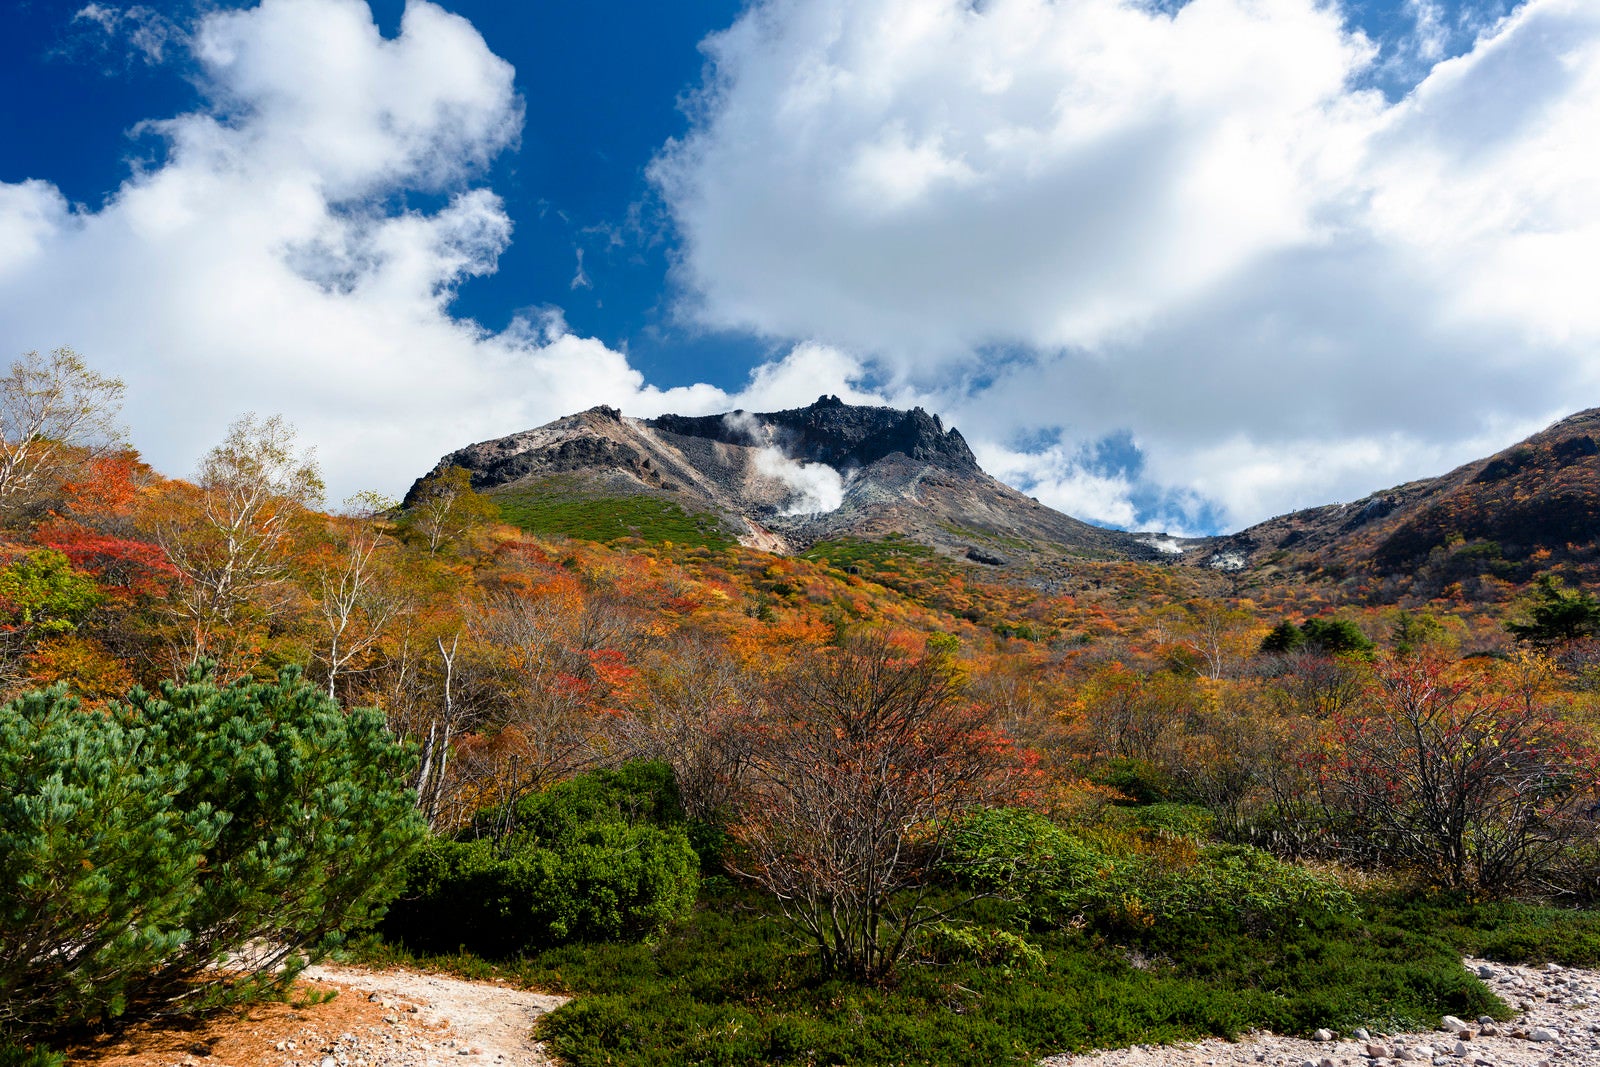 「那須岳の定番フォトスポット姥ヶ平の景色」の写真